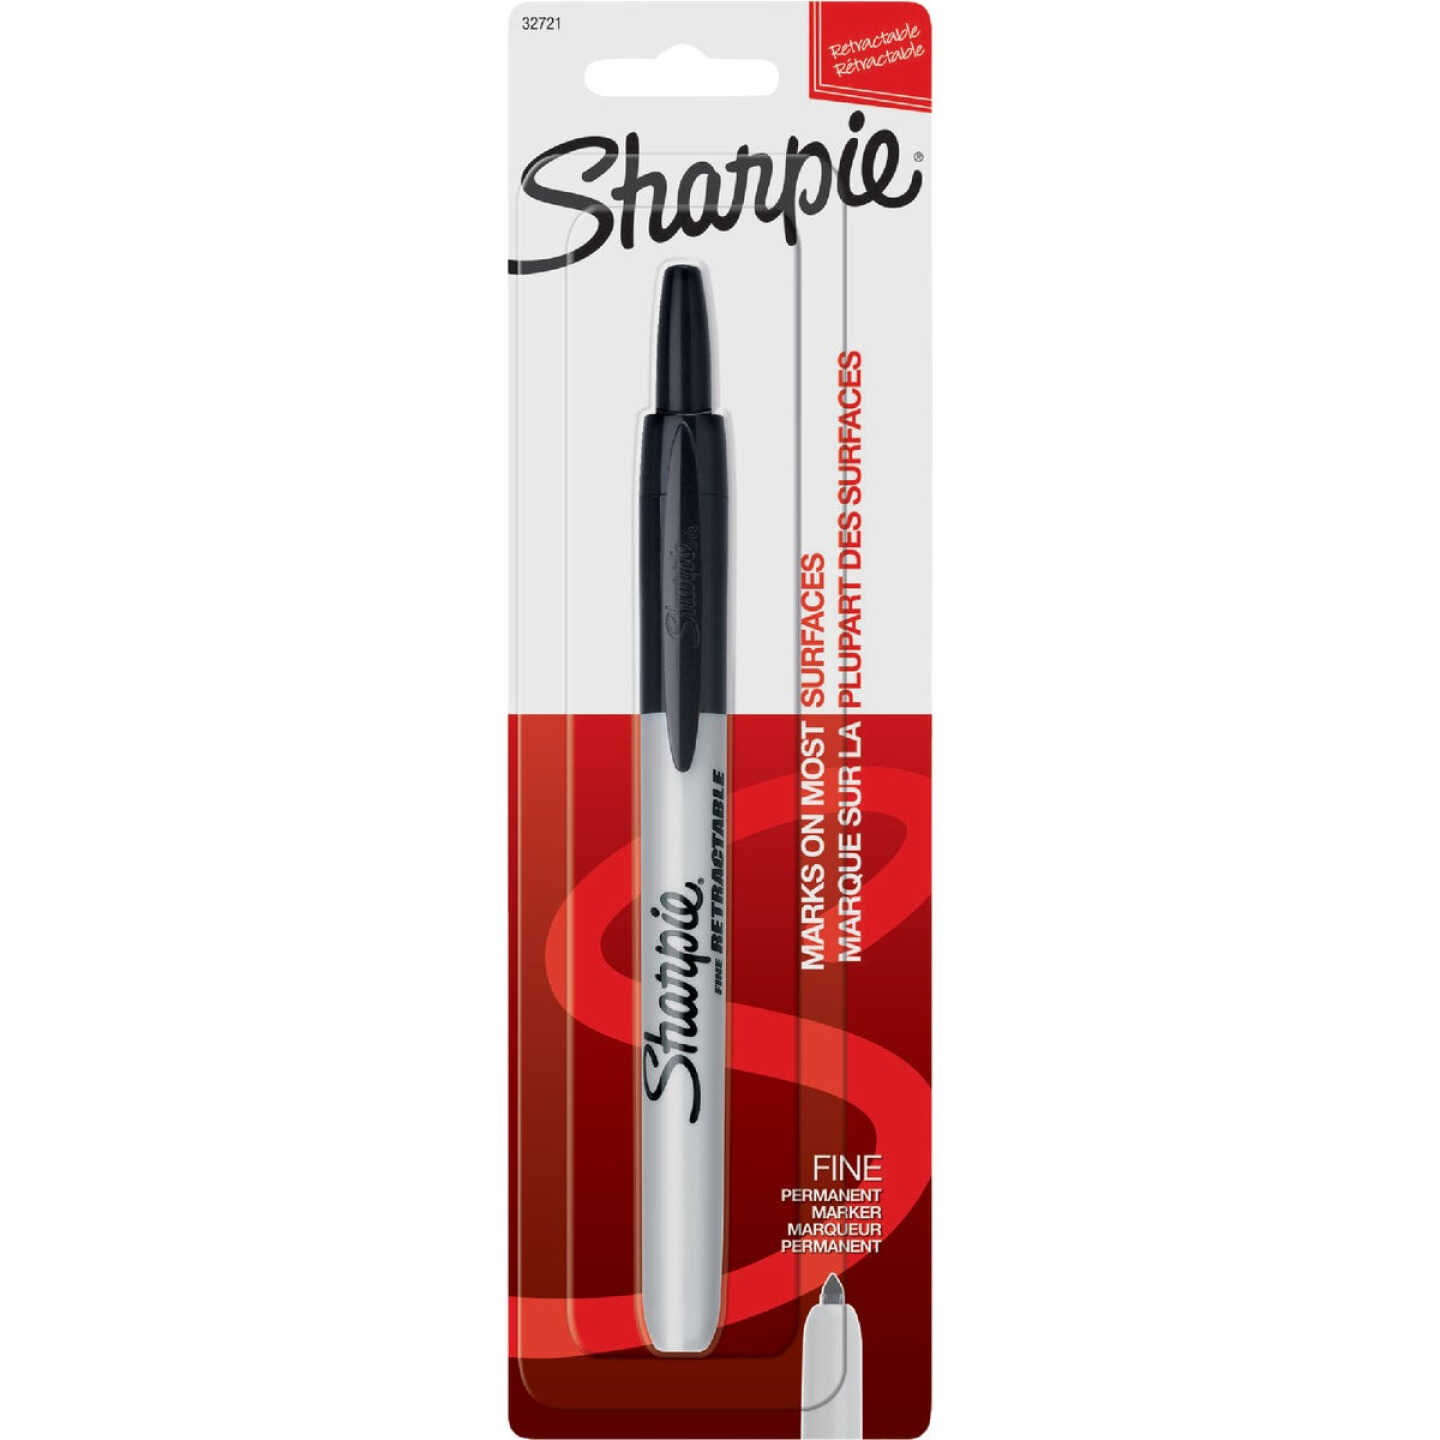 Sharpie Ultra Fine Point Retractable Permanent Markers 3-pkg-black